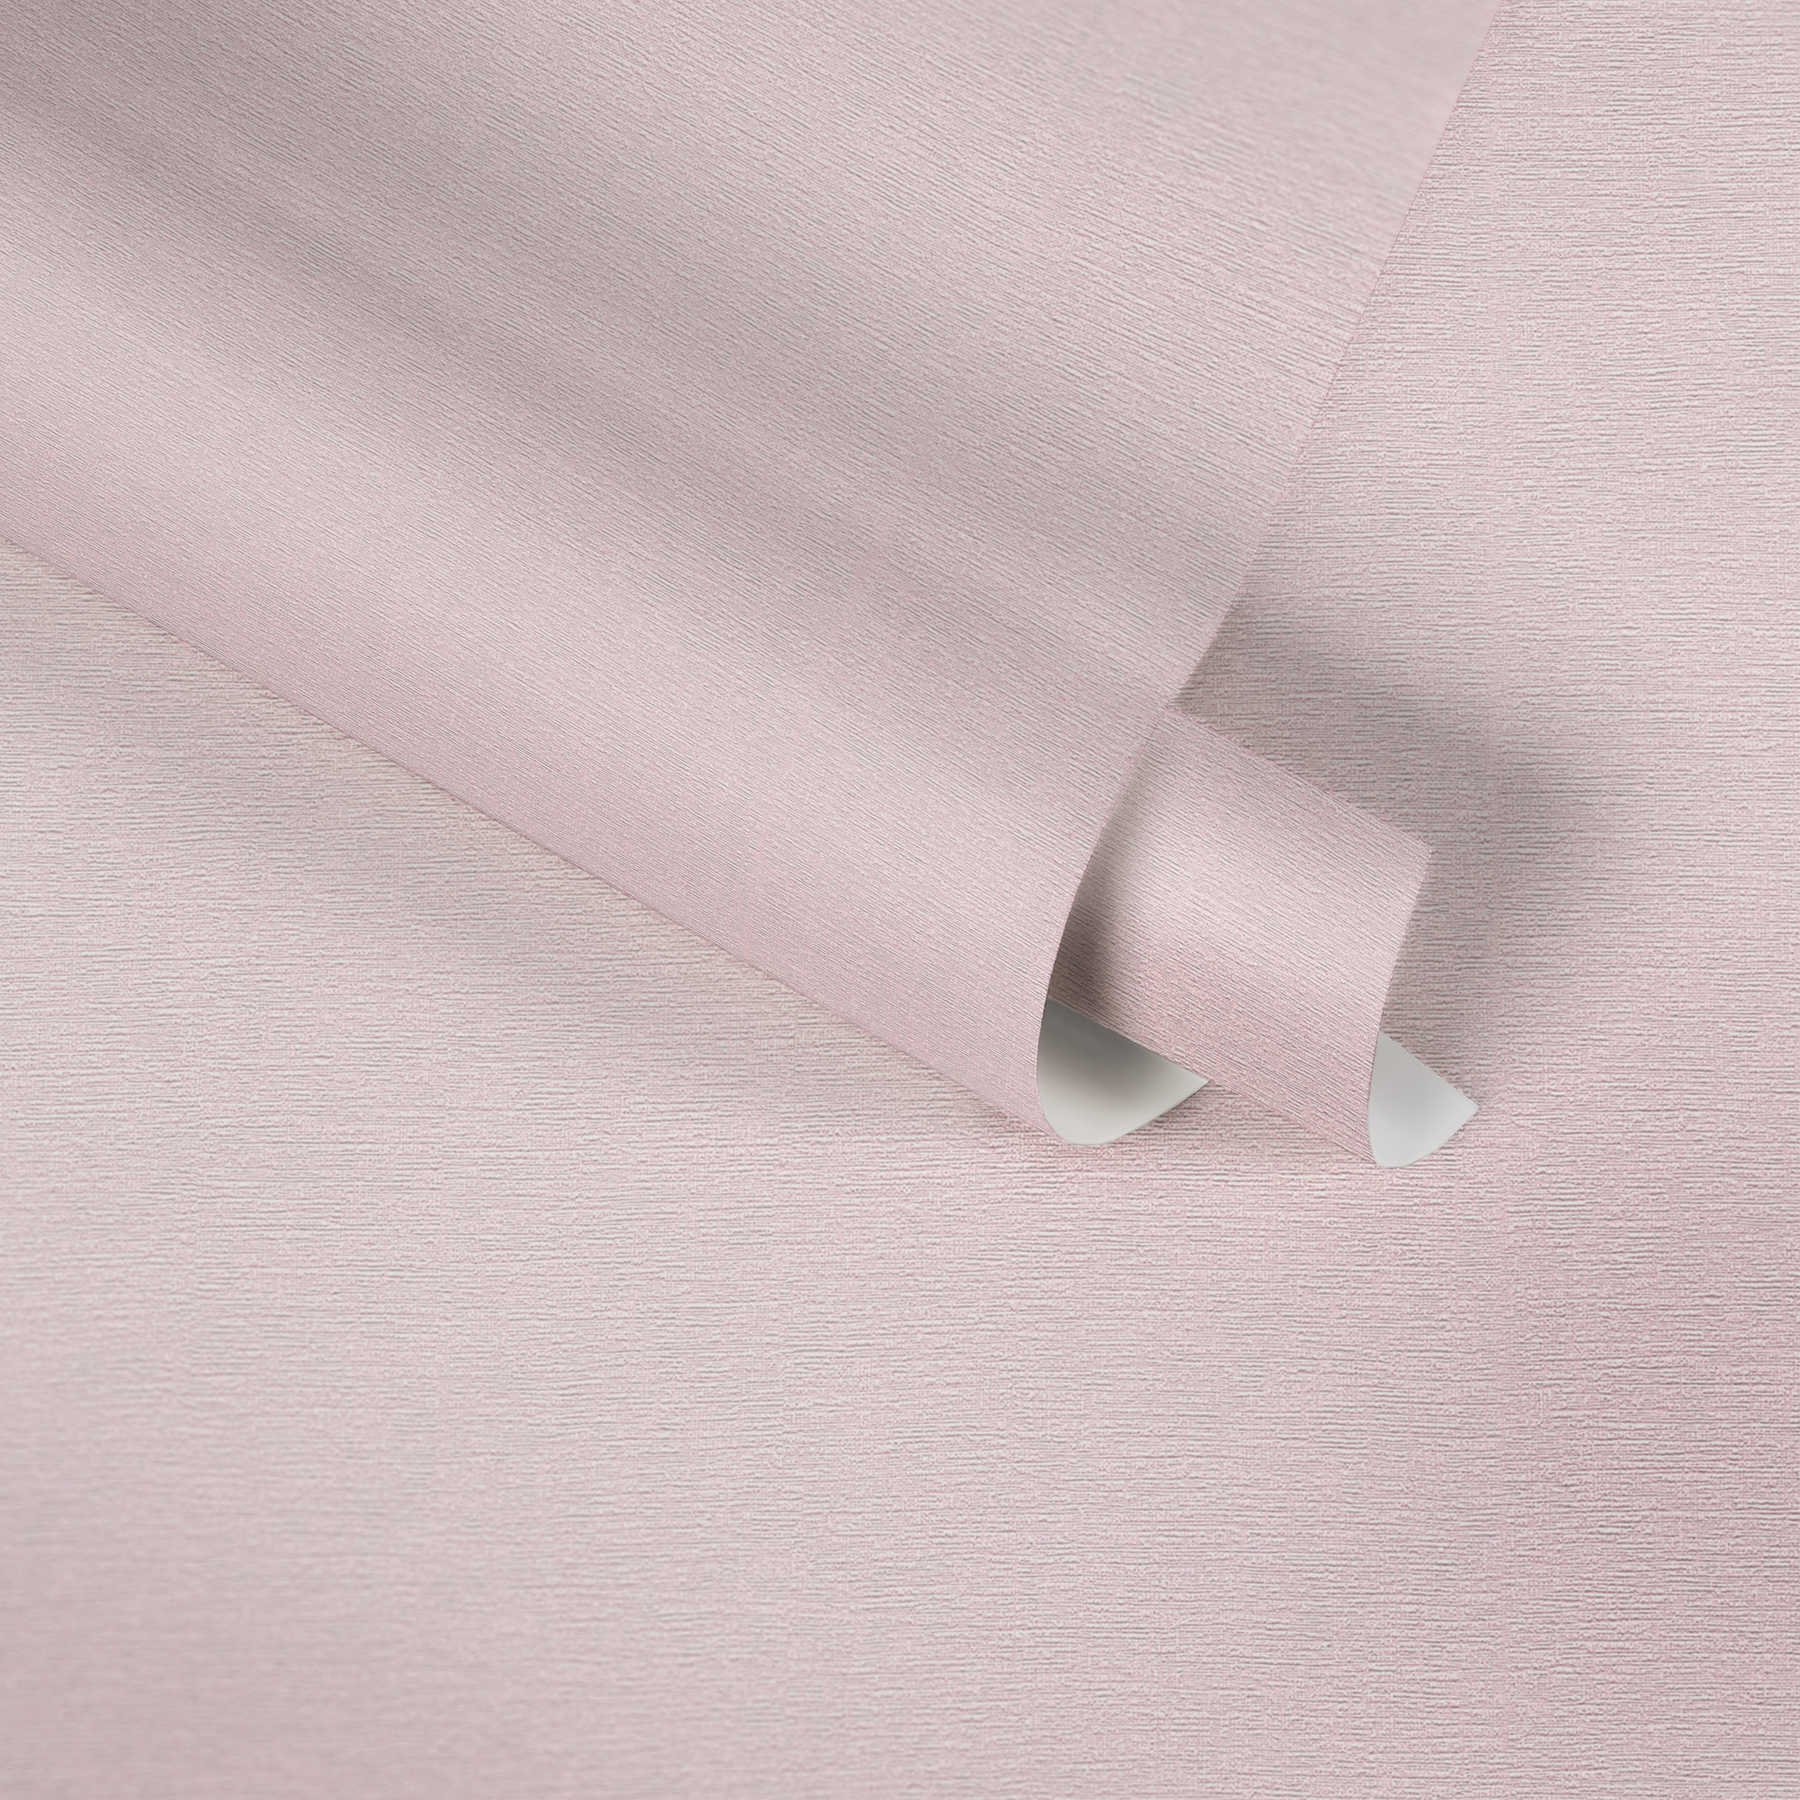             Vliesbehang effen met textiel look - roze
        